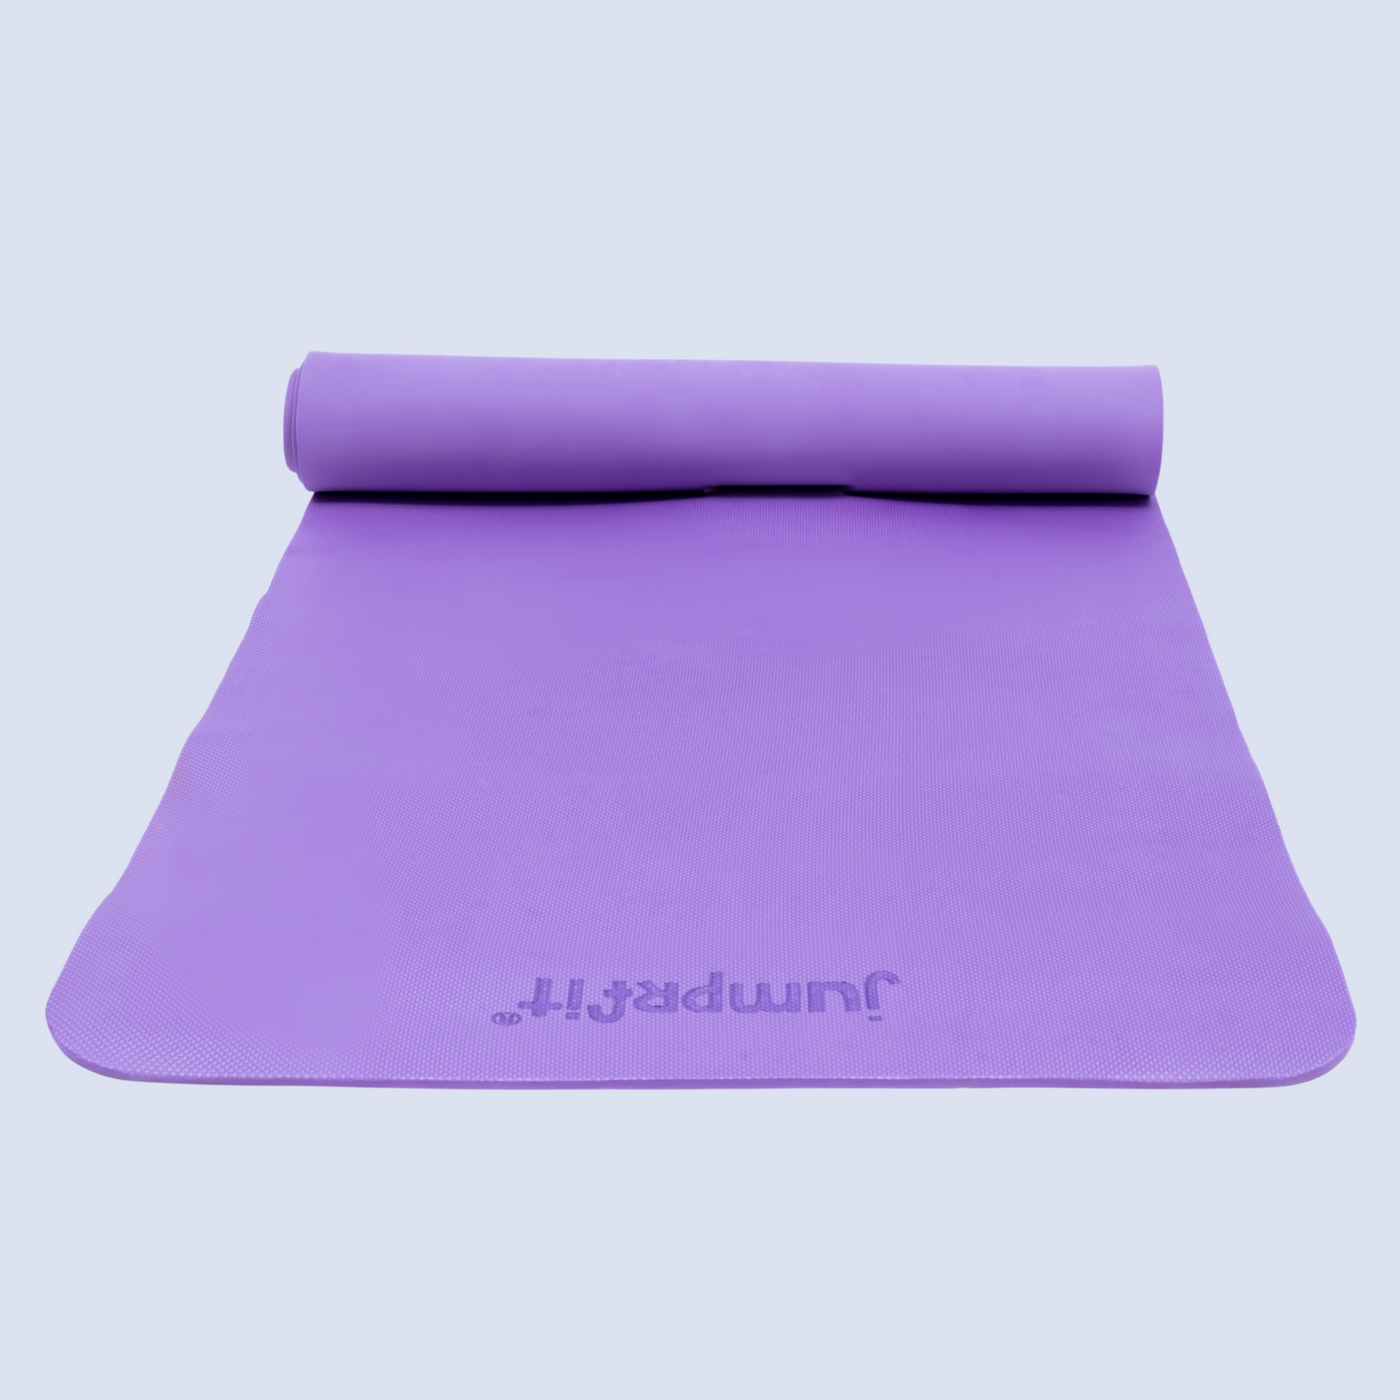 Buy Yogwise Yoga Mat for Women Men Anti EVA Material 4mm Yoga